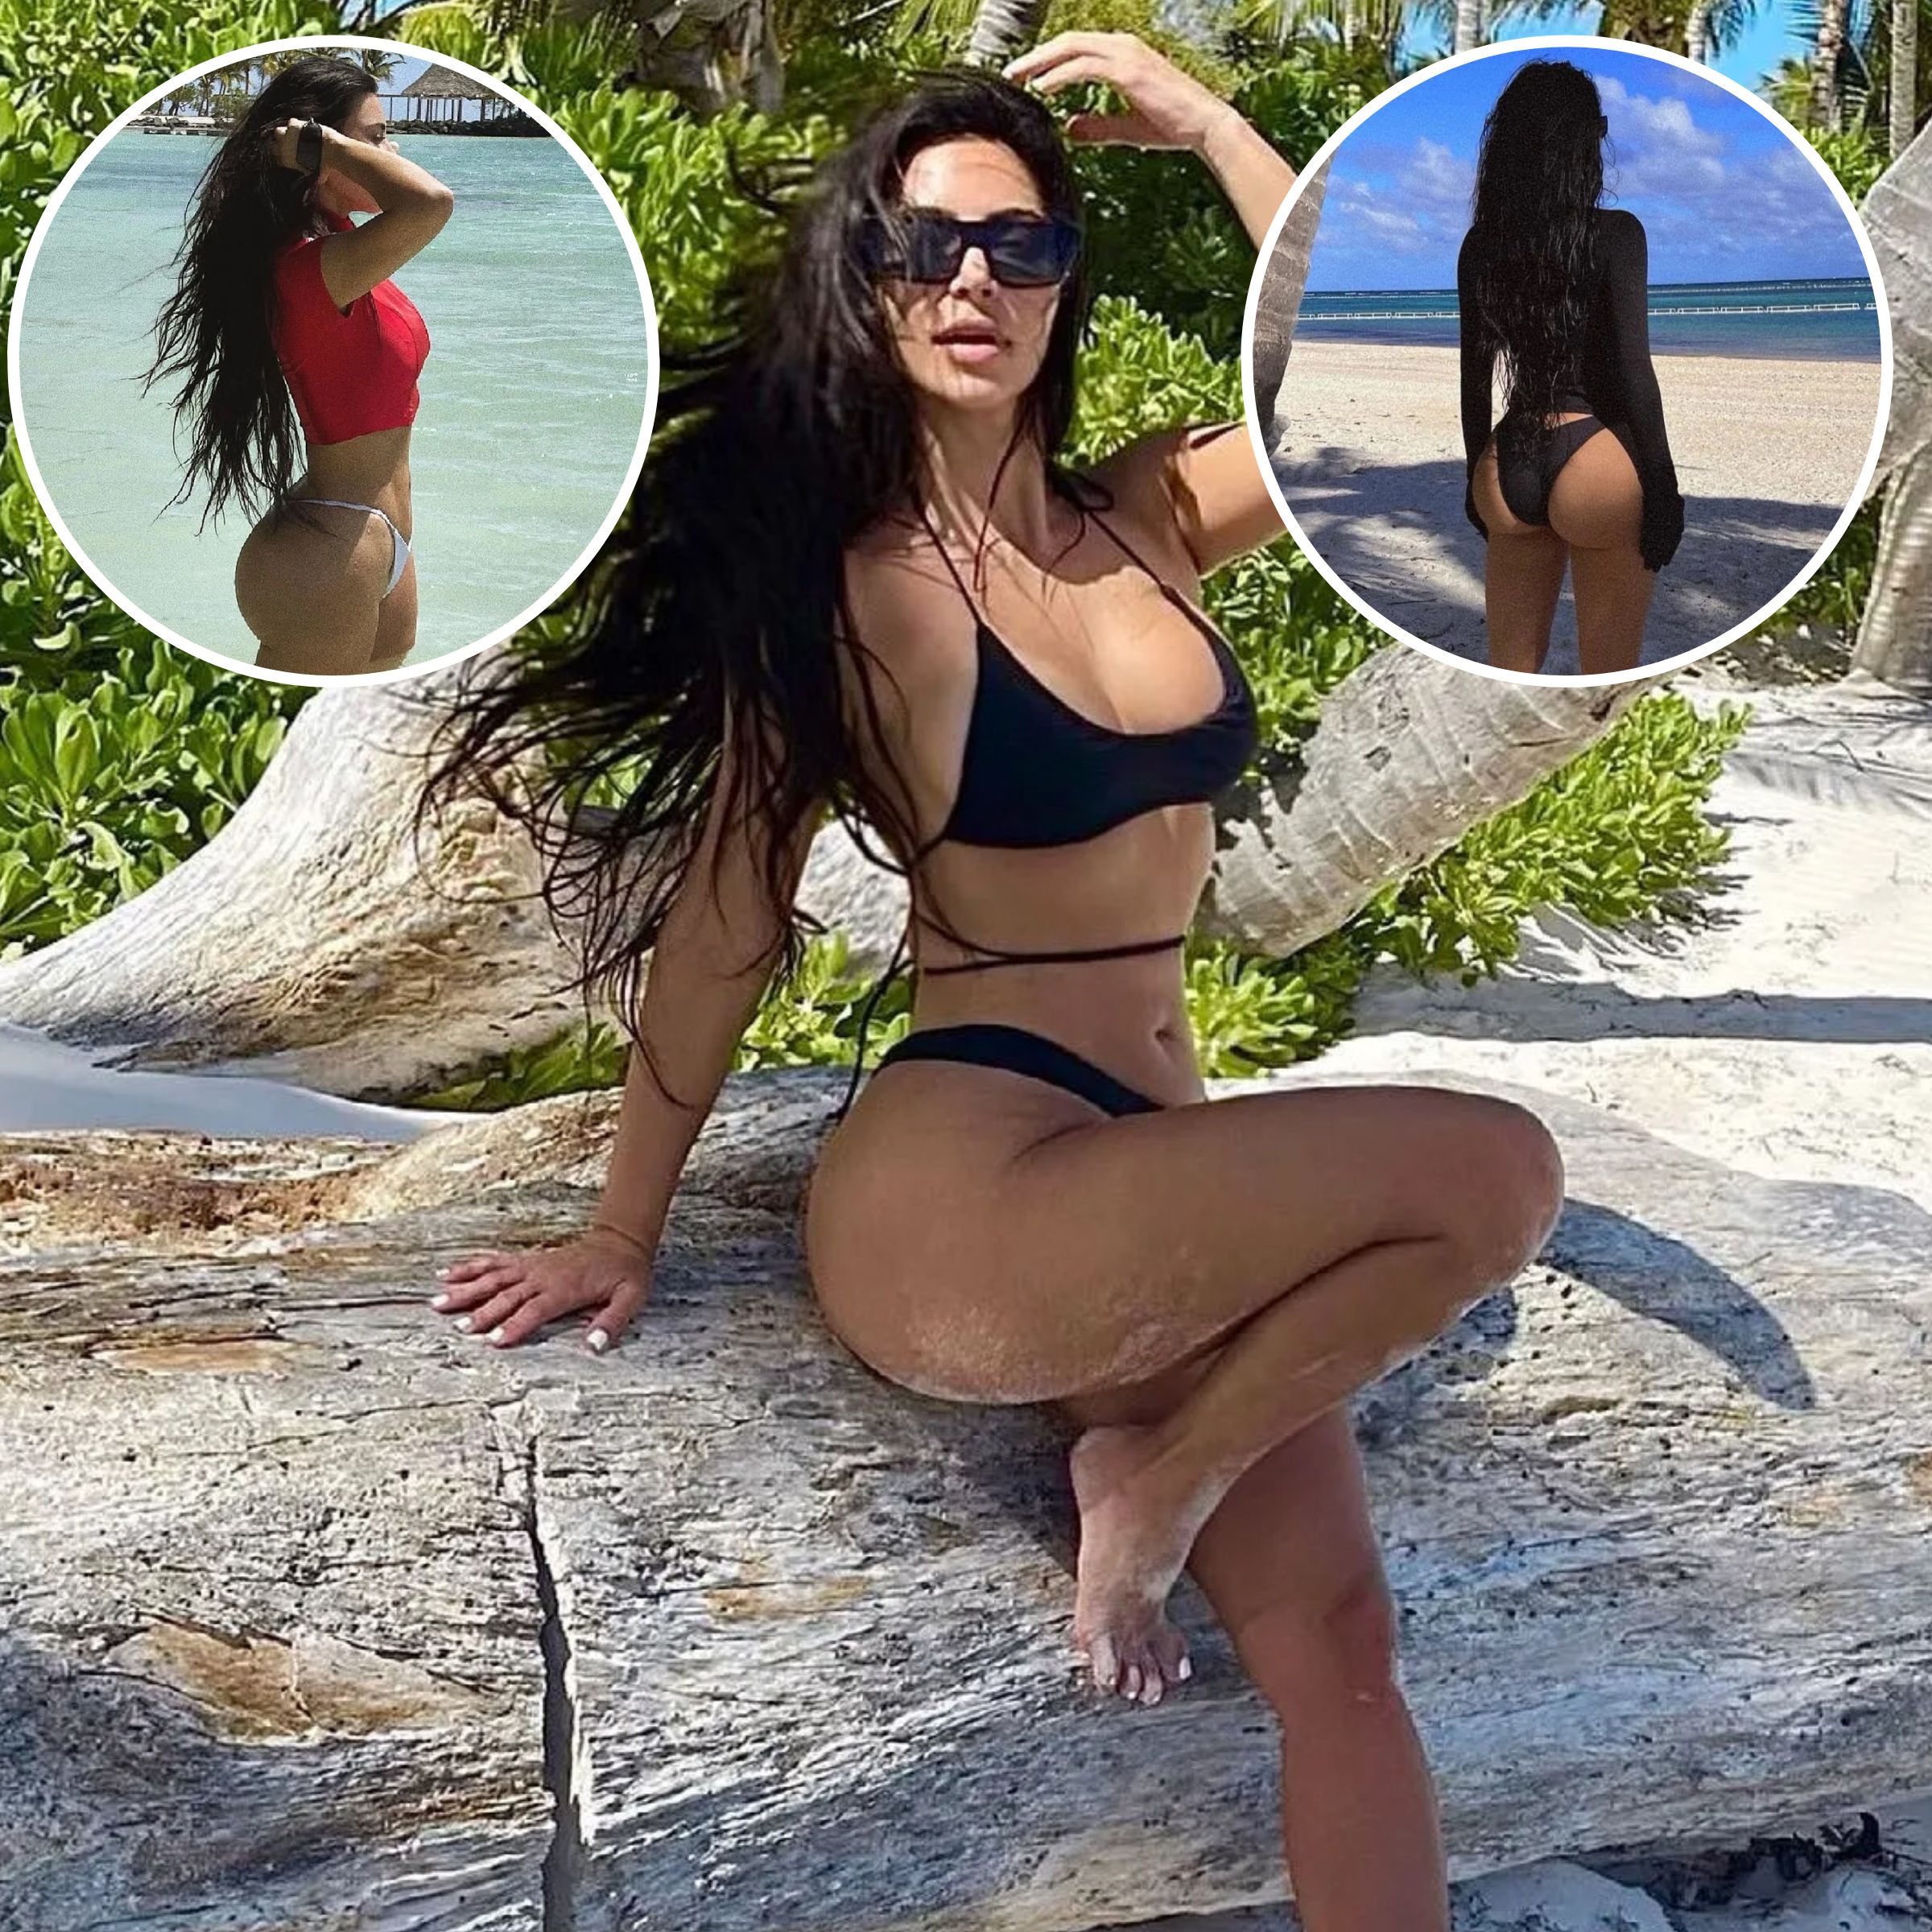 Amanda Martinez Big Ass - Kim Kardashian's Best Butt Photos: Pics Showing Off Her Assets